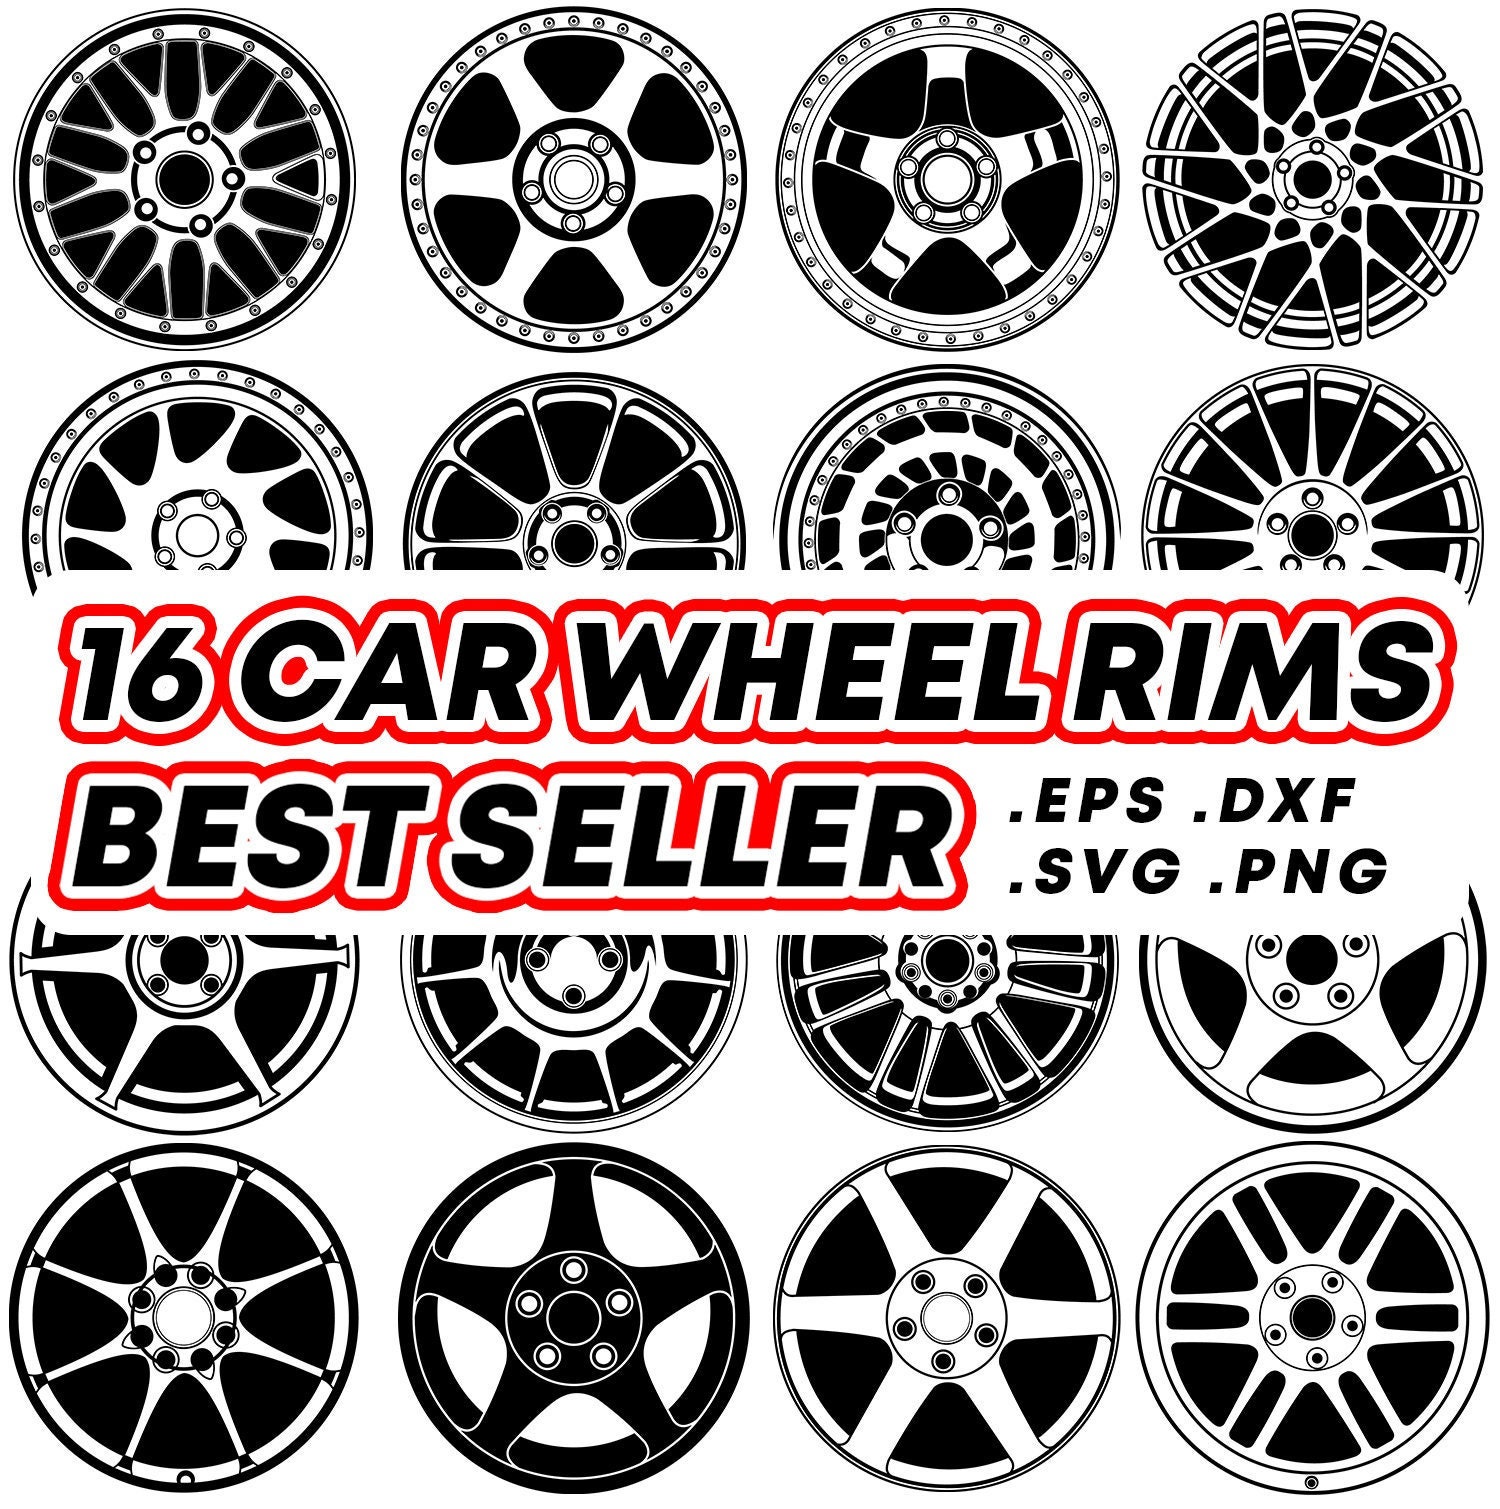 Wheels rims bundle for sale  